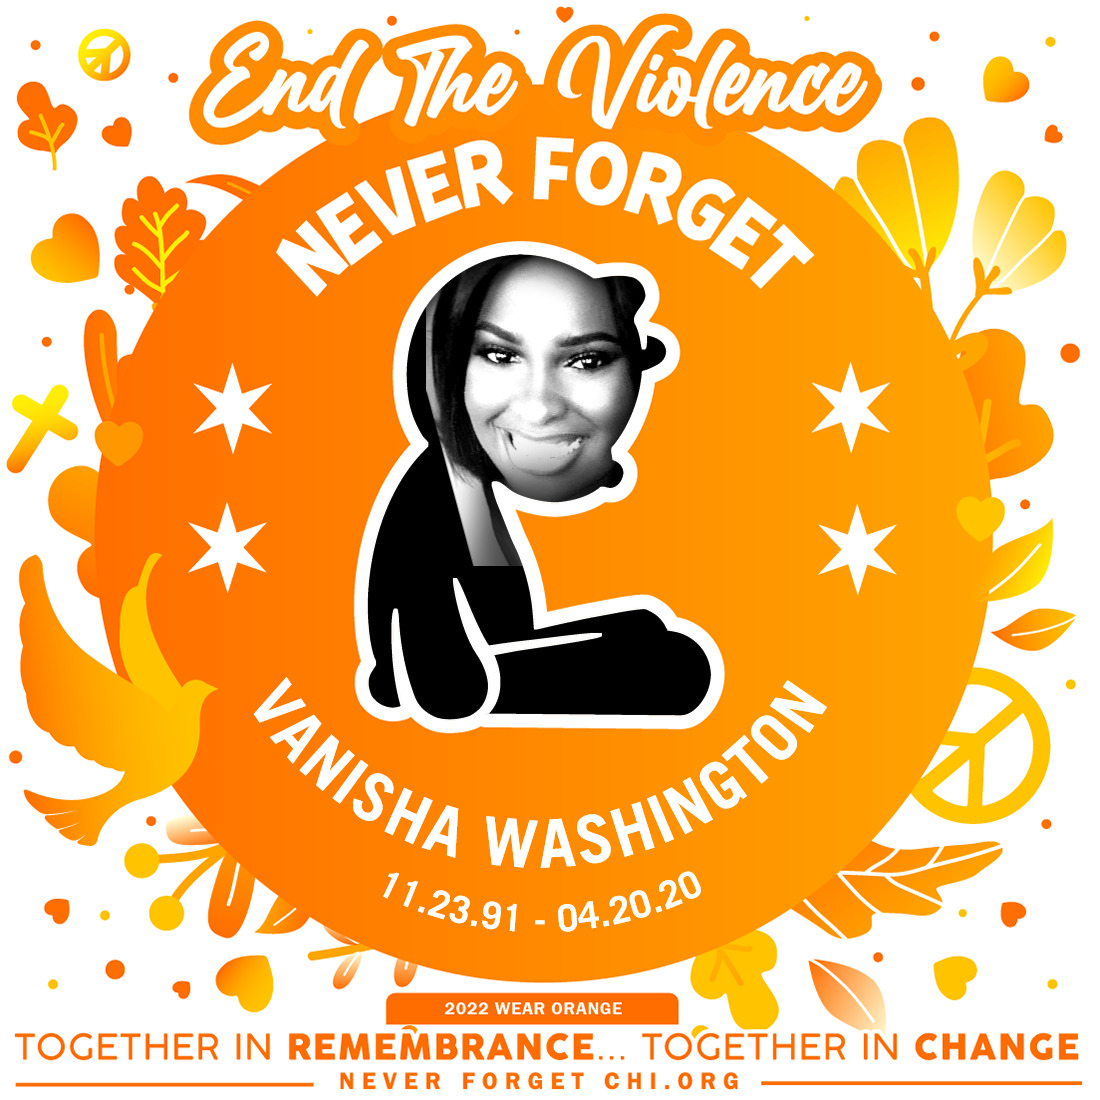 Vanisha Washington